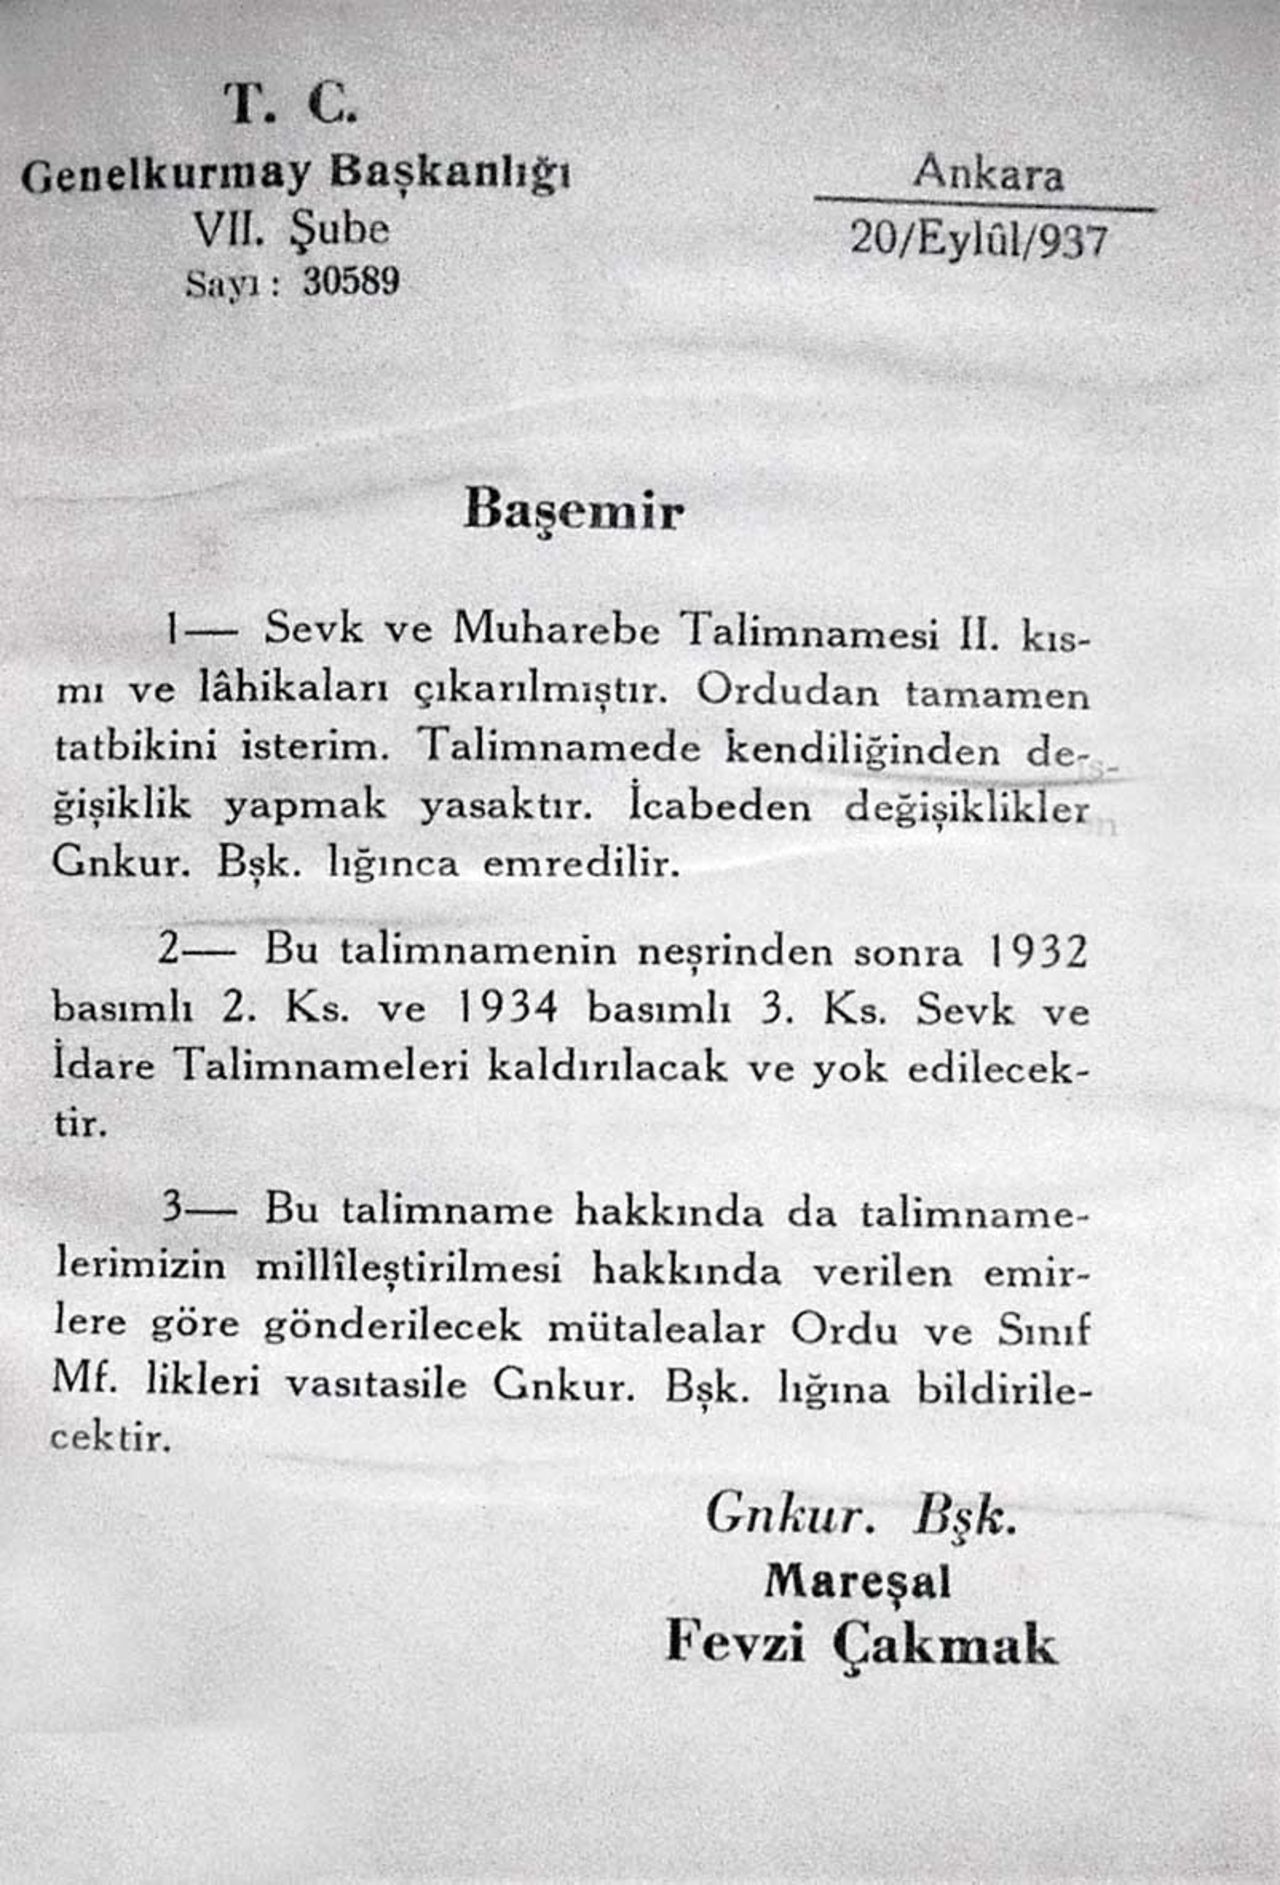 Genelkurmay Başkanı Maraşal Fevzi Çakmak’ın orduya 20 Eylül 1937’de gönderdiği başemir. Emrin ilerki kısımlarında, forsların çizimleri de yeralıyor.